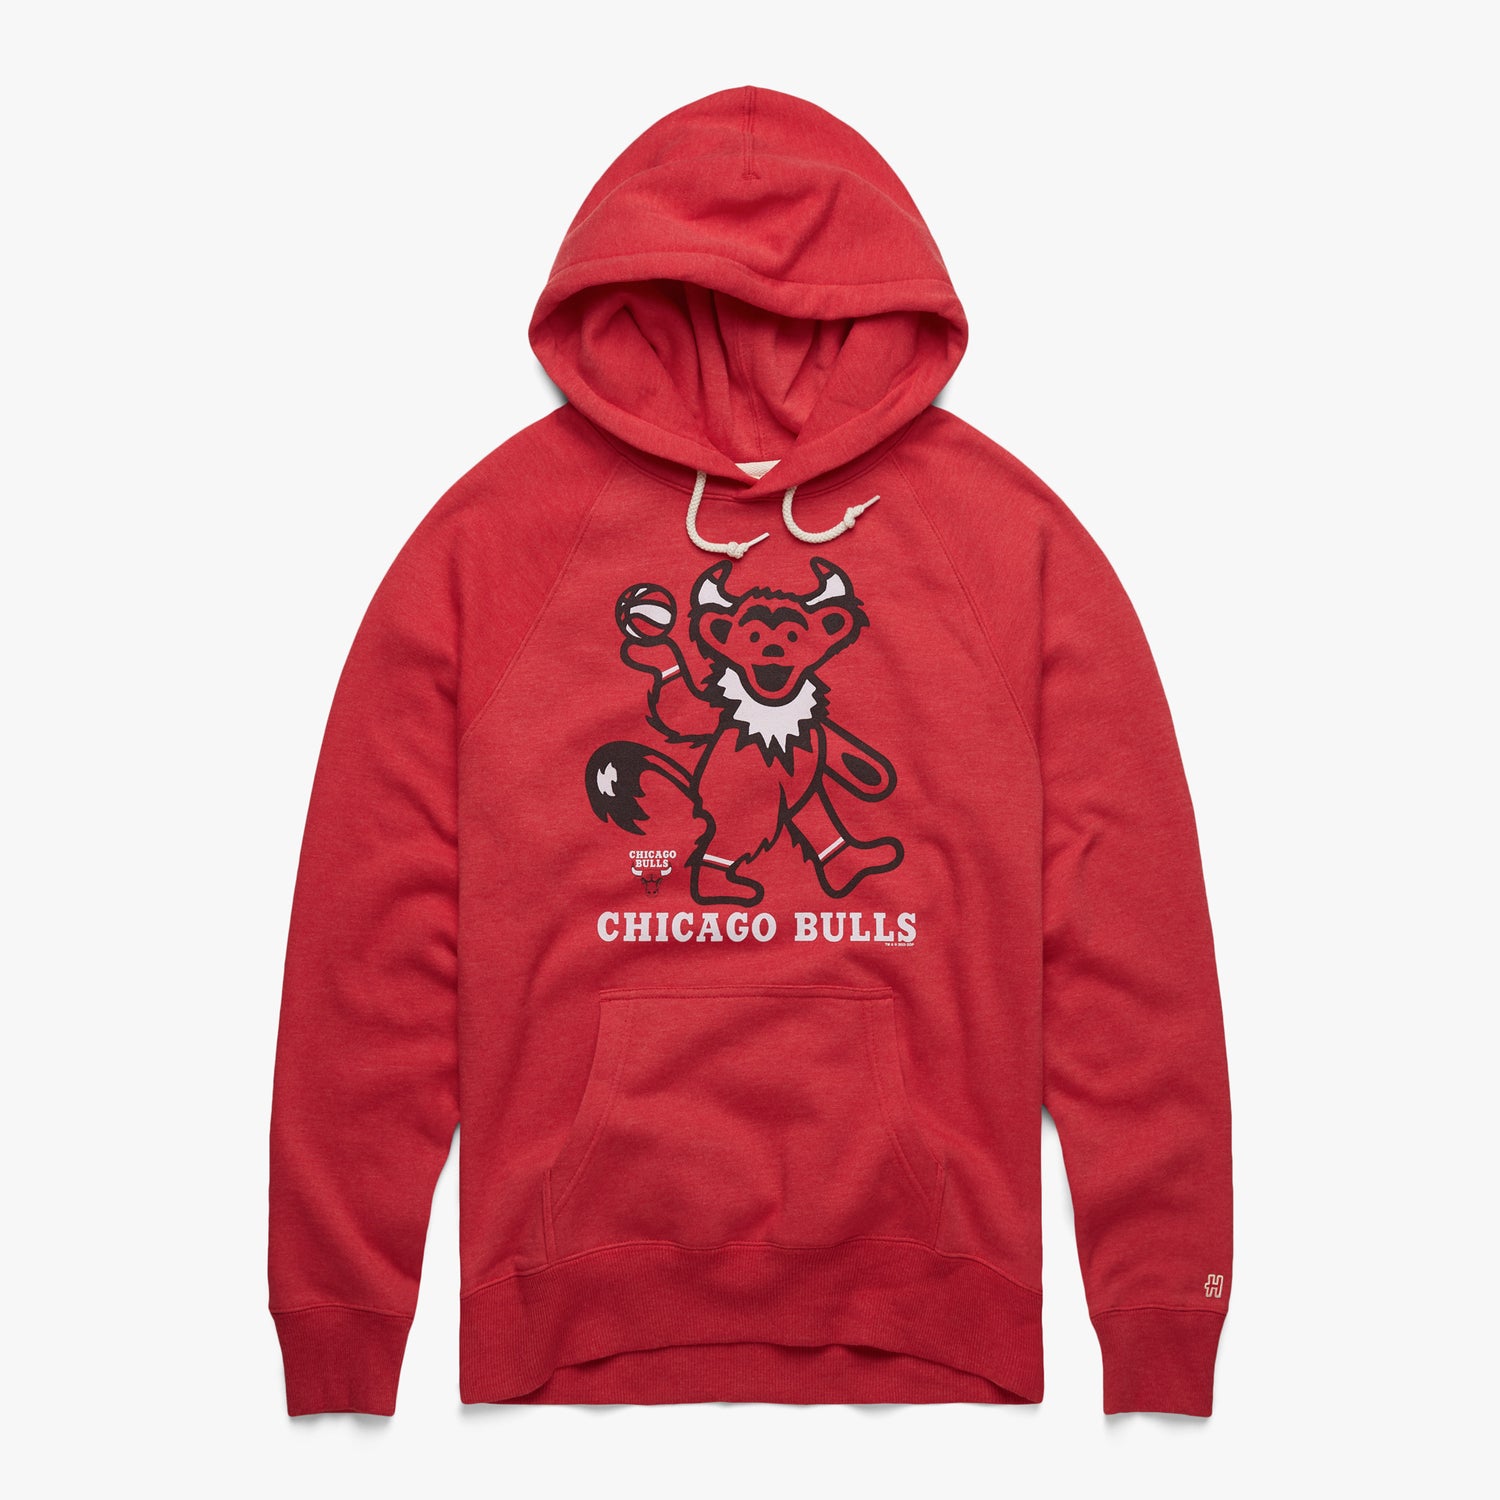 NBA x Grateful Dead x Chicago Bulls Shirt, hoodie, sweater, long